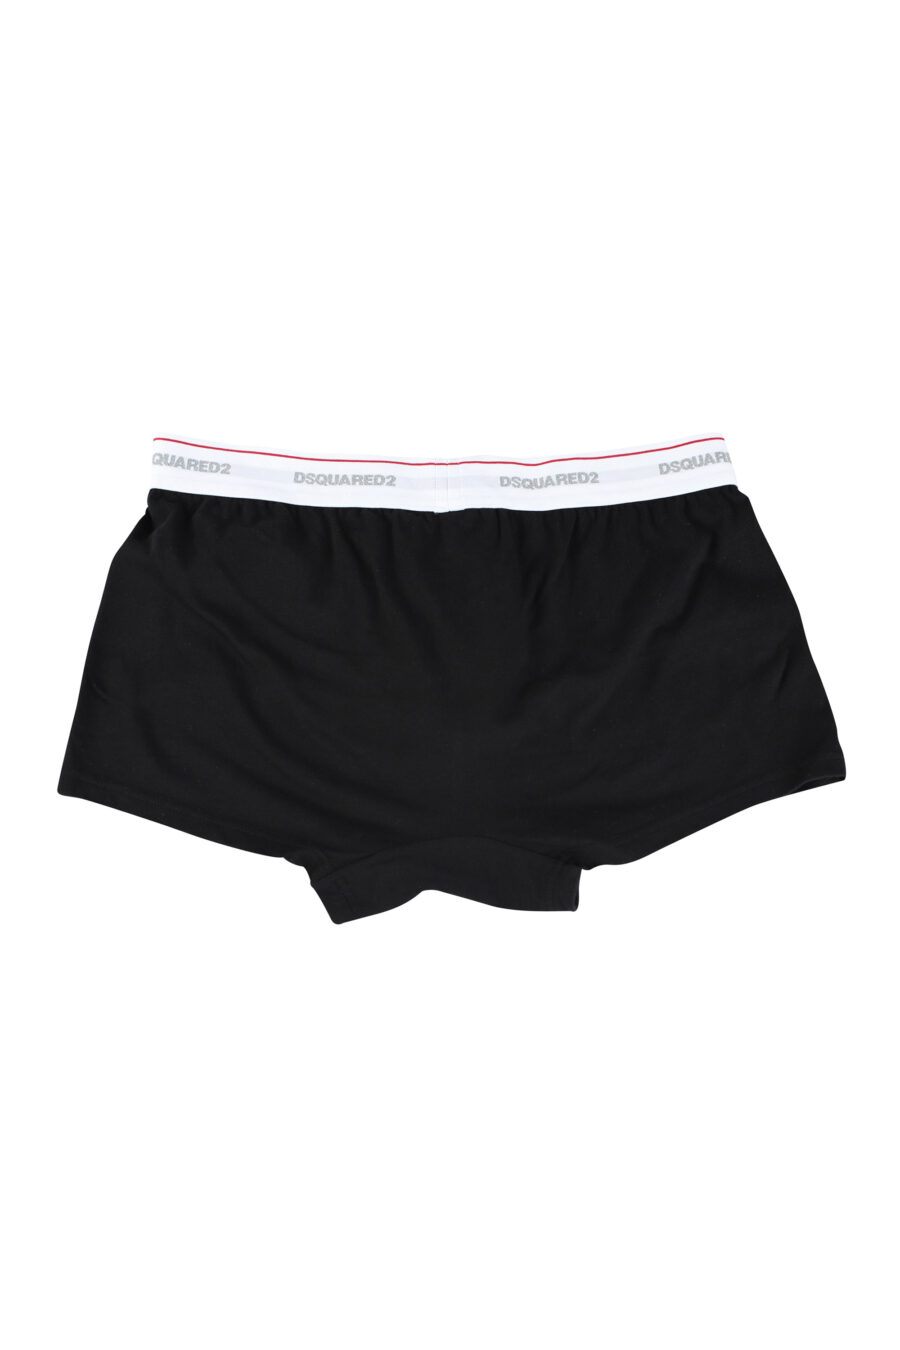 Pack de tres boxers negros con logo en cinturilla blanco - IMG 9639